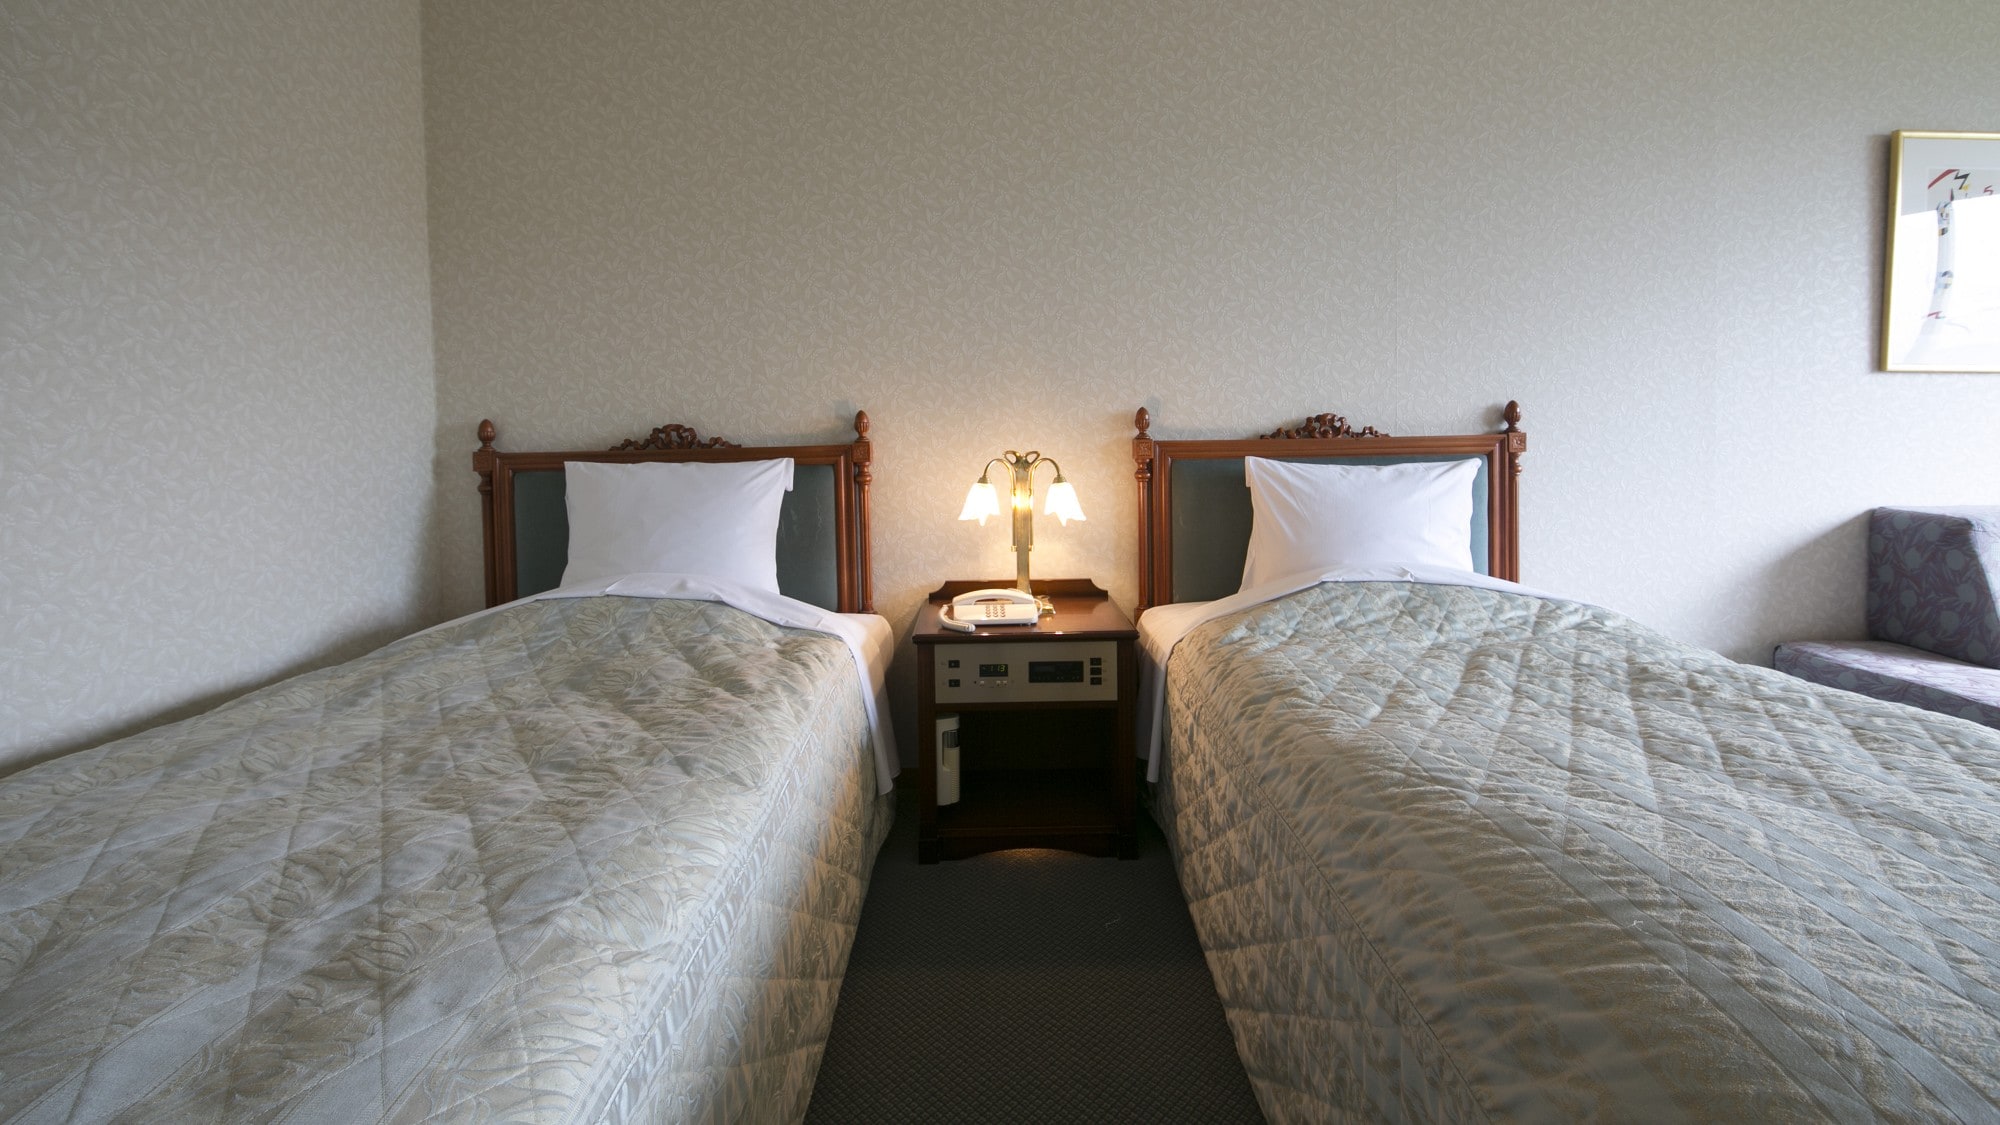 【스탠다드 트윈】기본 침대 2개에 엑스트라 베드를 2대 넣는 것으로, 최대 4명 숙박이 가능합니다.